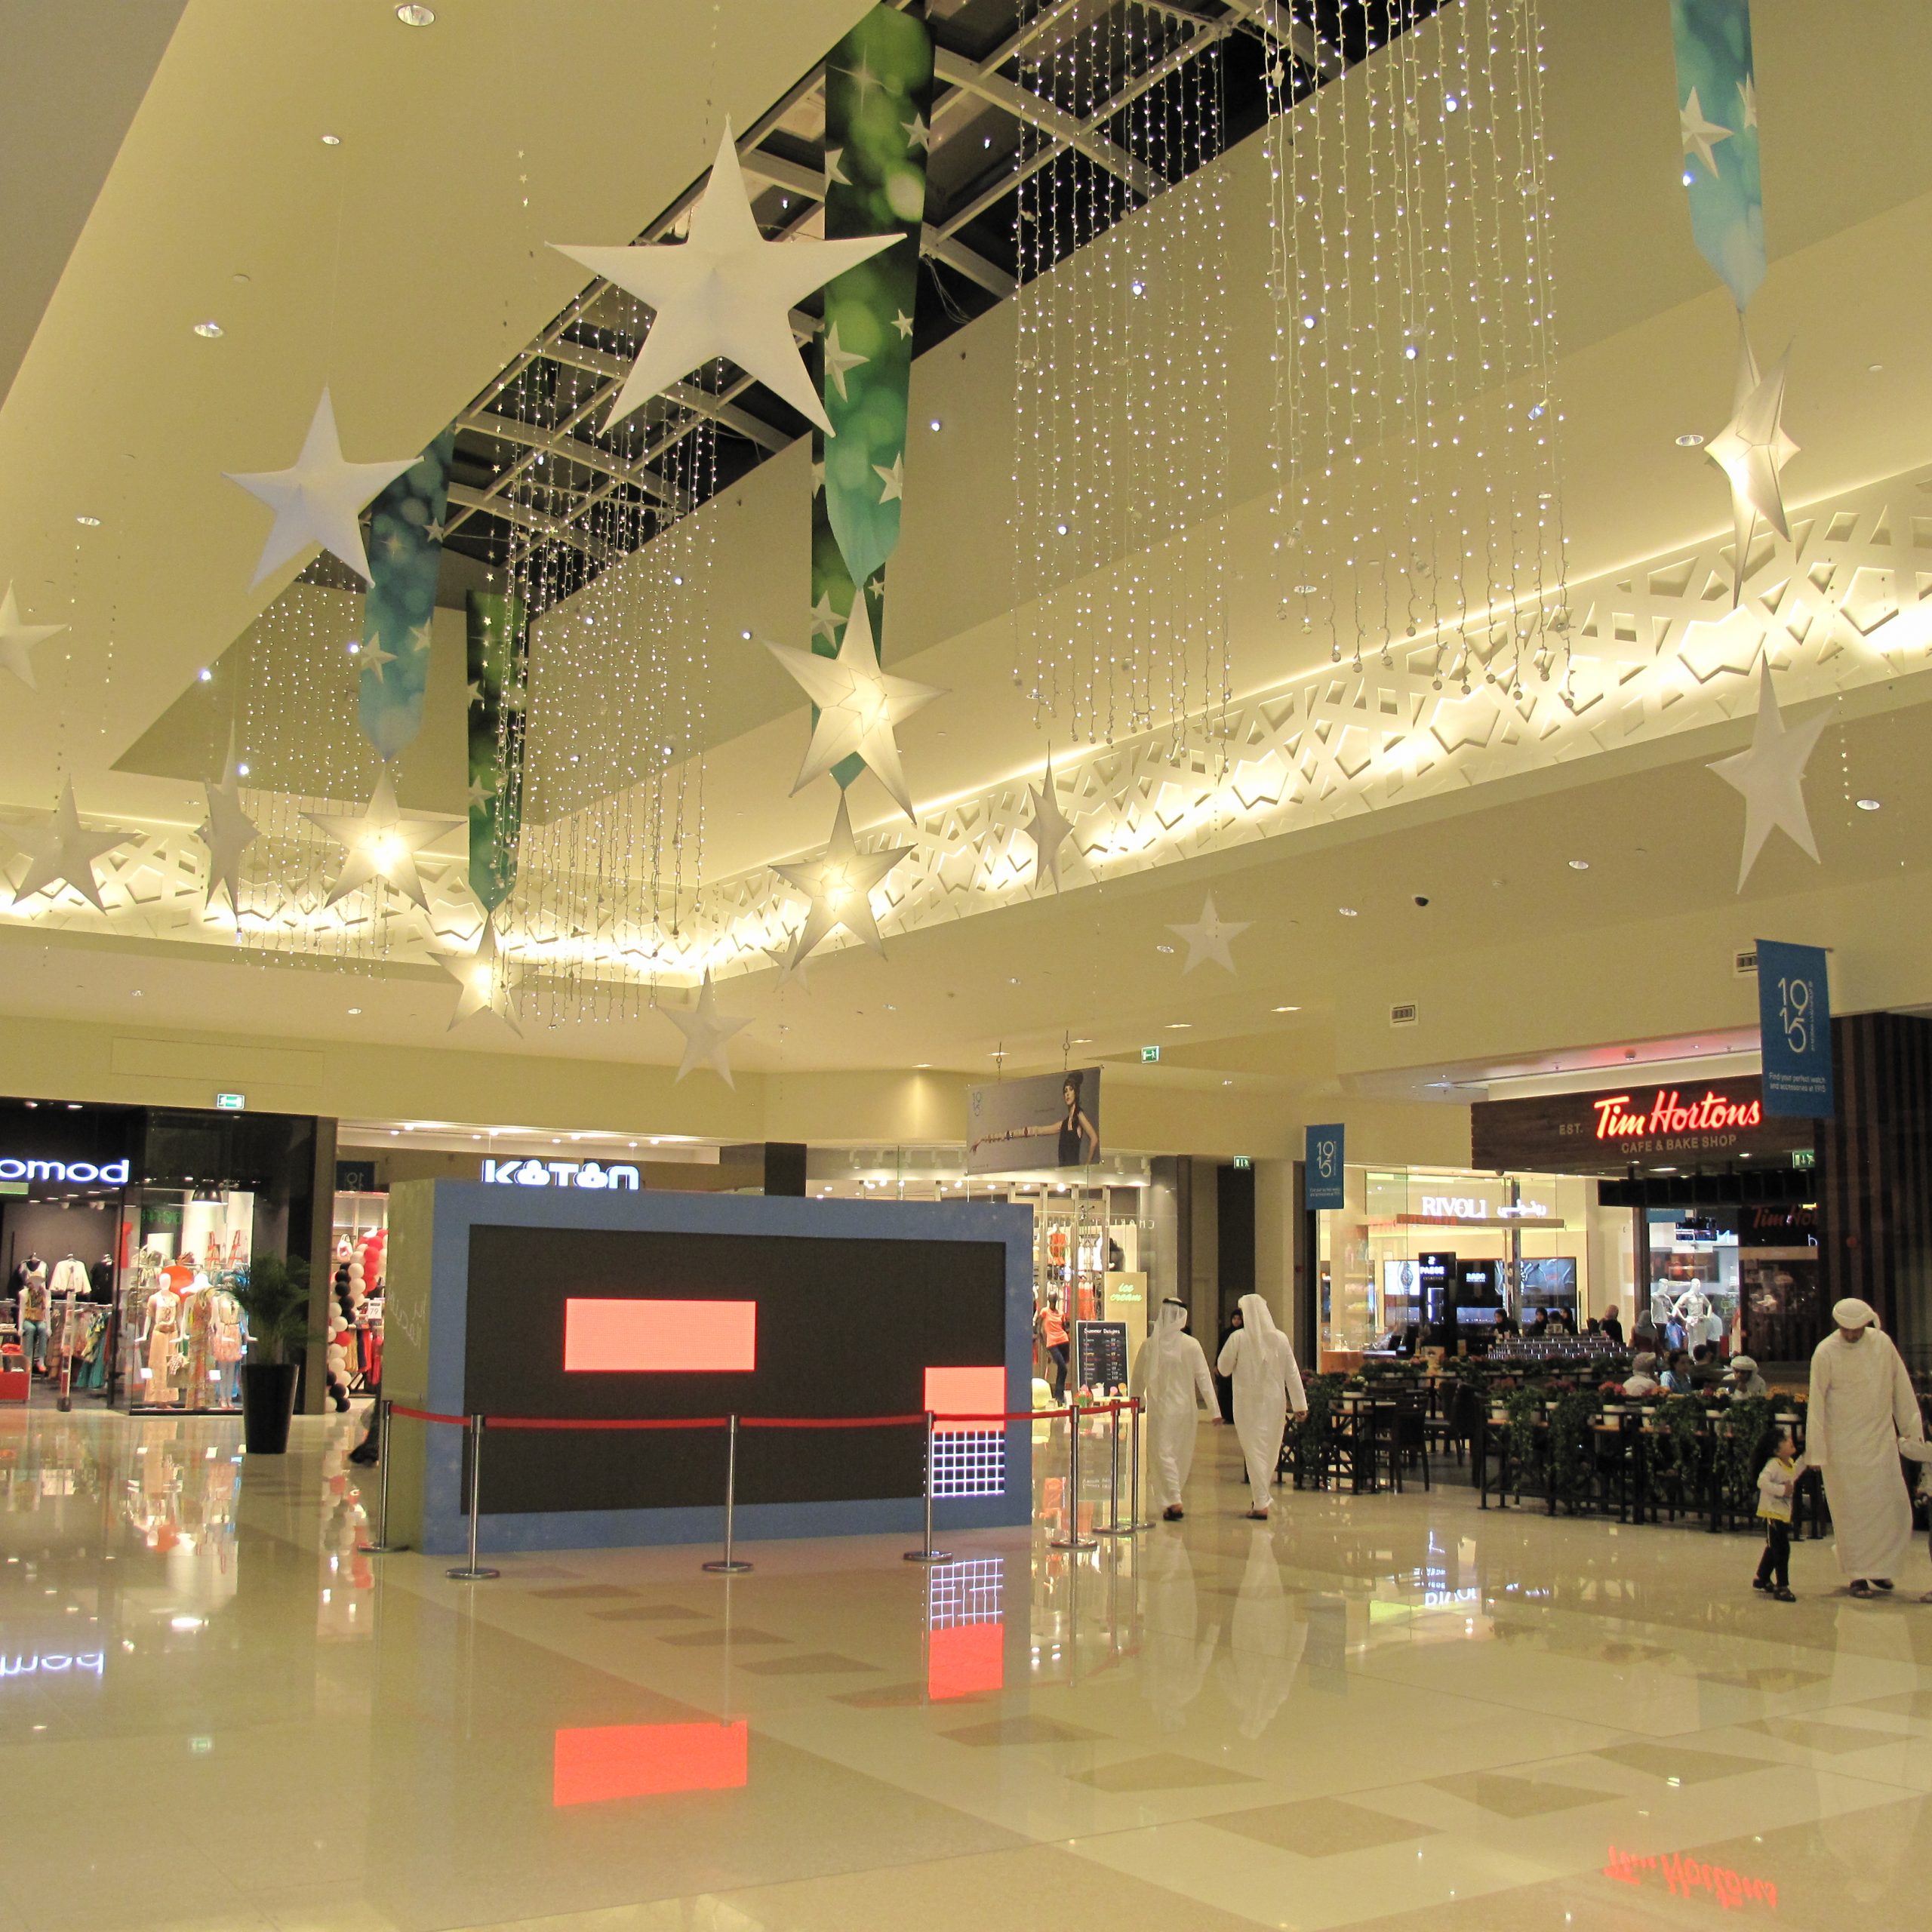 Fujairah City Center – Fujairah, UAE